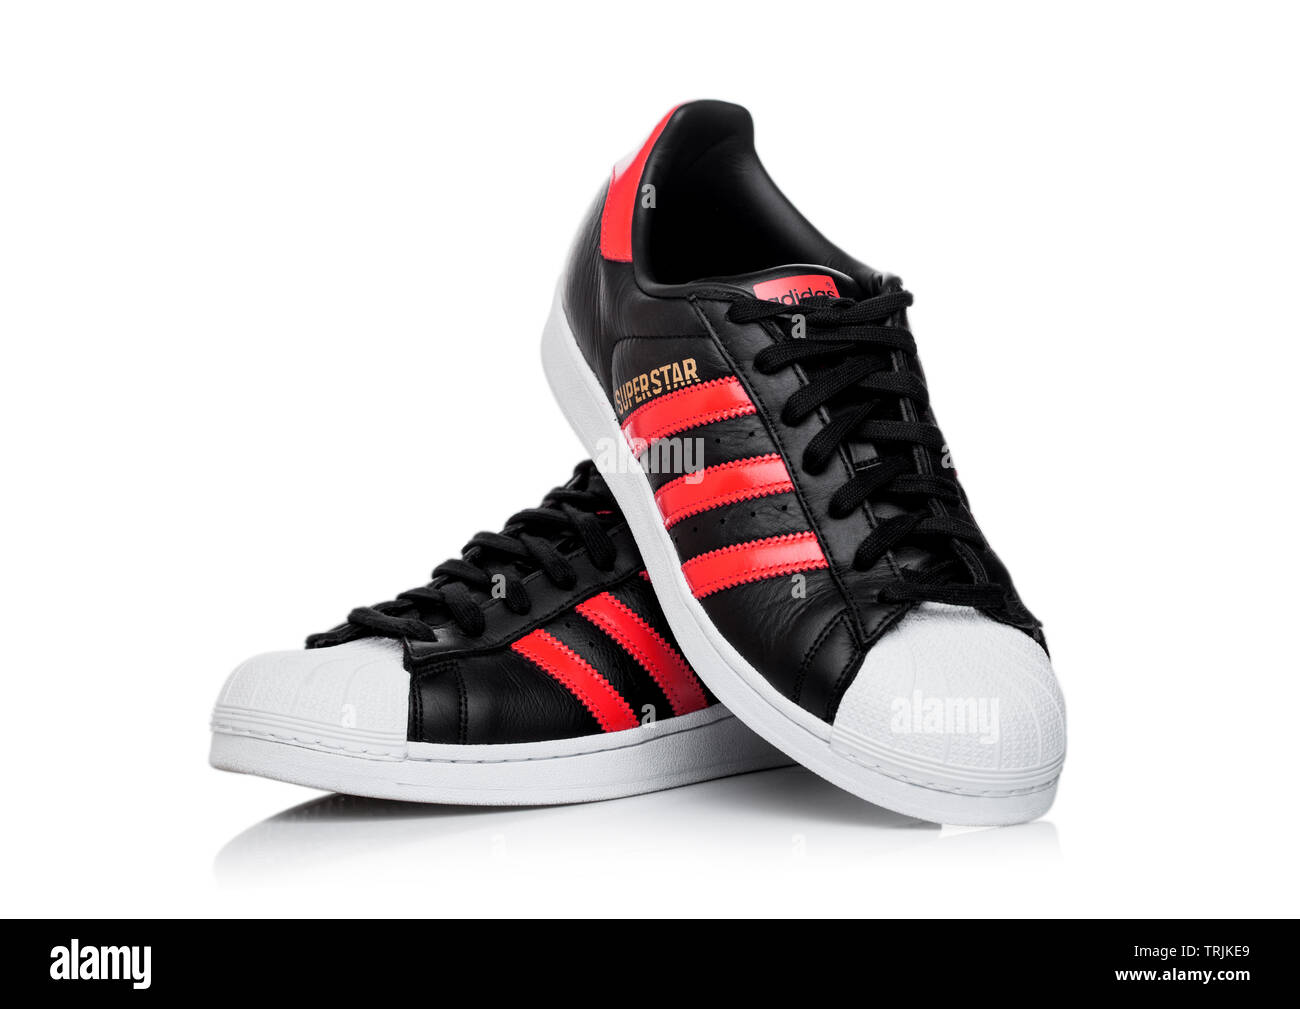 LONDON, UK - Juni 05, 2019: Adidas Superstar schwarze Schuhe mit roten  Streifen auf weißem Hintergrund Stockfotografie - Alamy